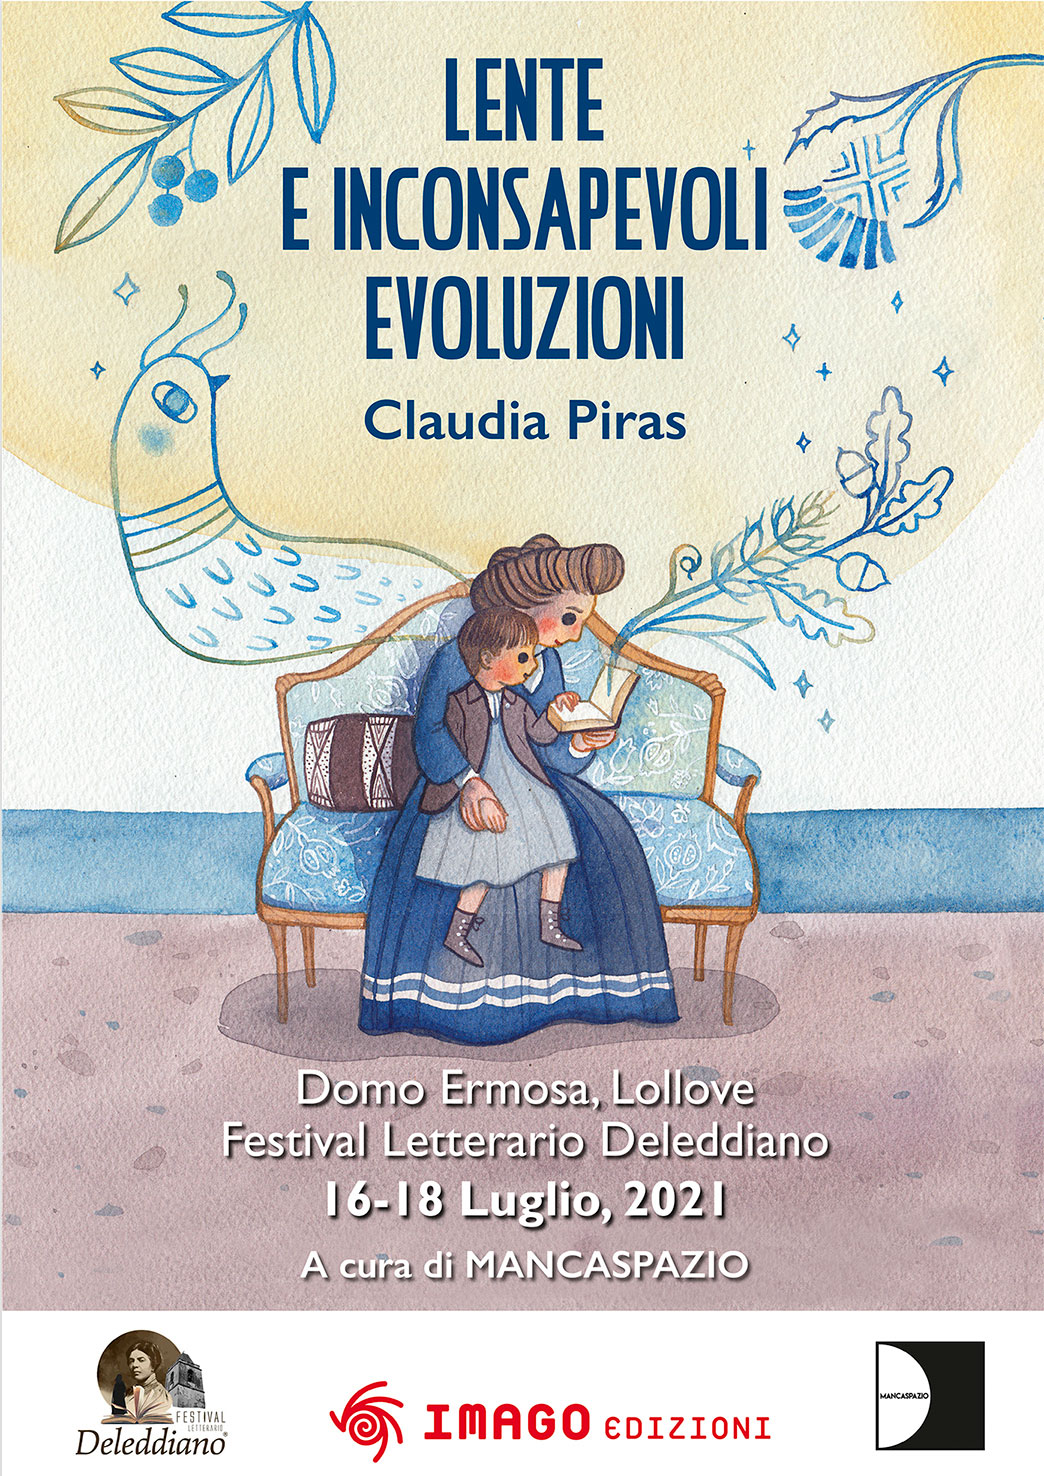 MANCASPAZIO. Festival Letterario Deleddiano “Lente e inconsapevoli evoluzioni” di Claudia Piras